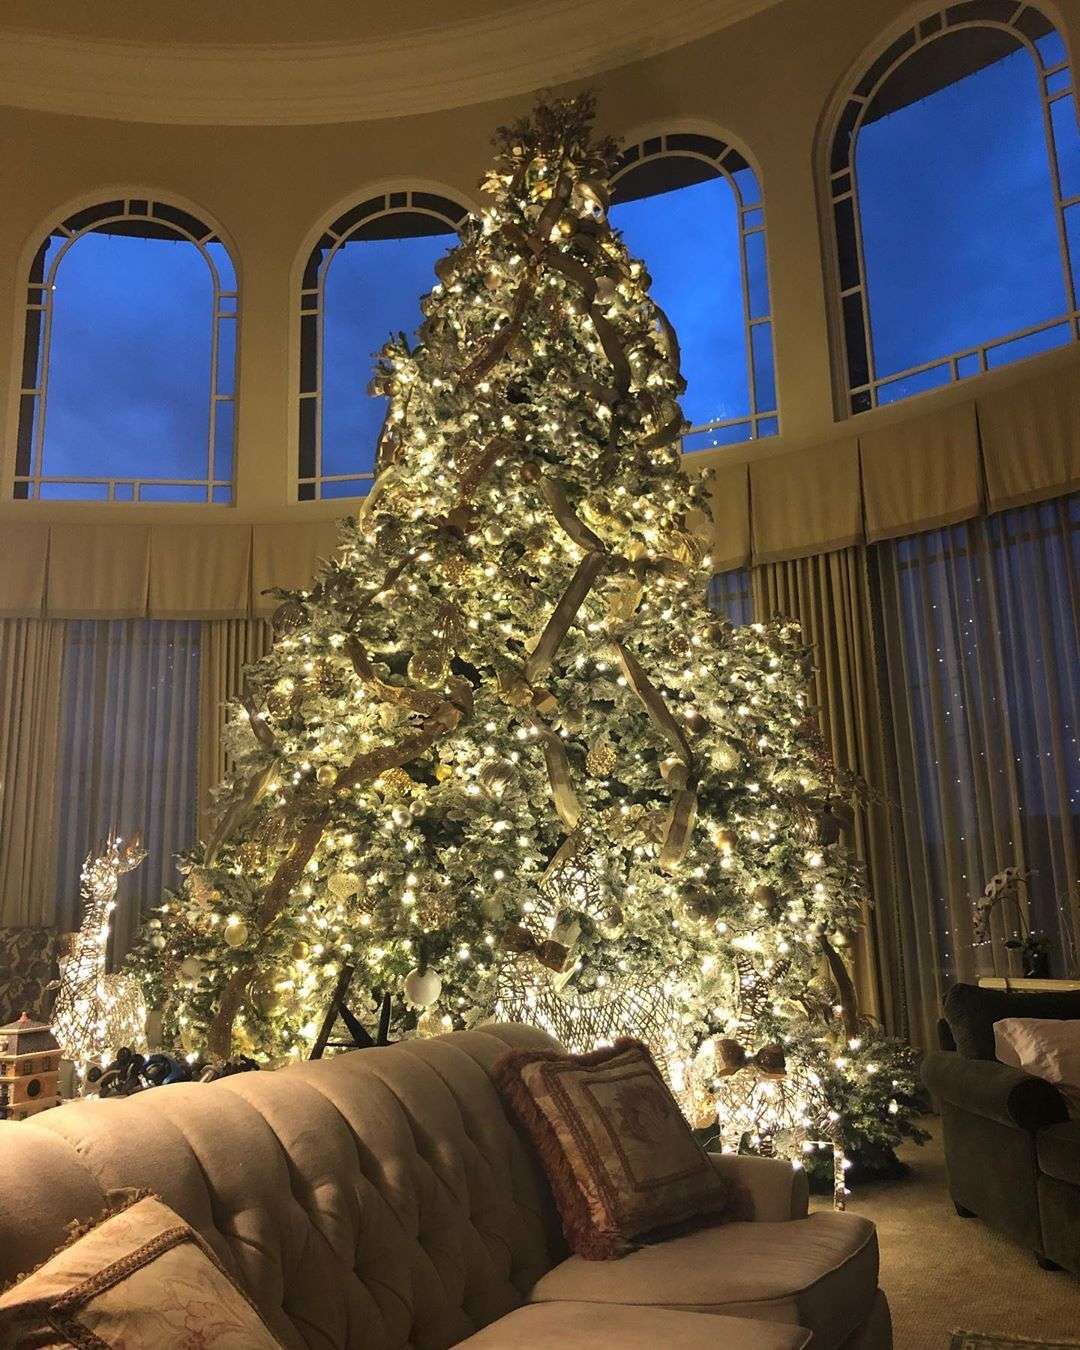 Брітні Спірс показала, як прикрасила дім до Нового року – обійшлася їй ця краса дорого - фото 463291